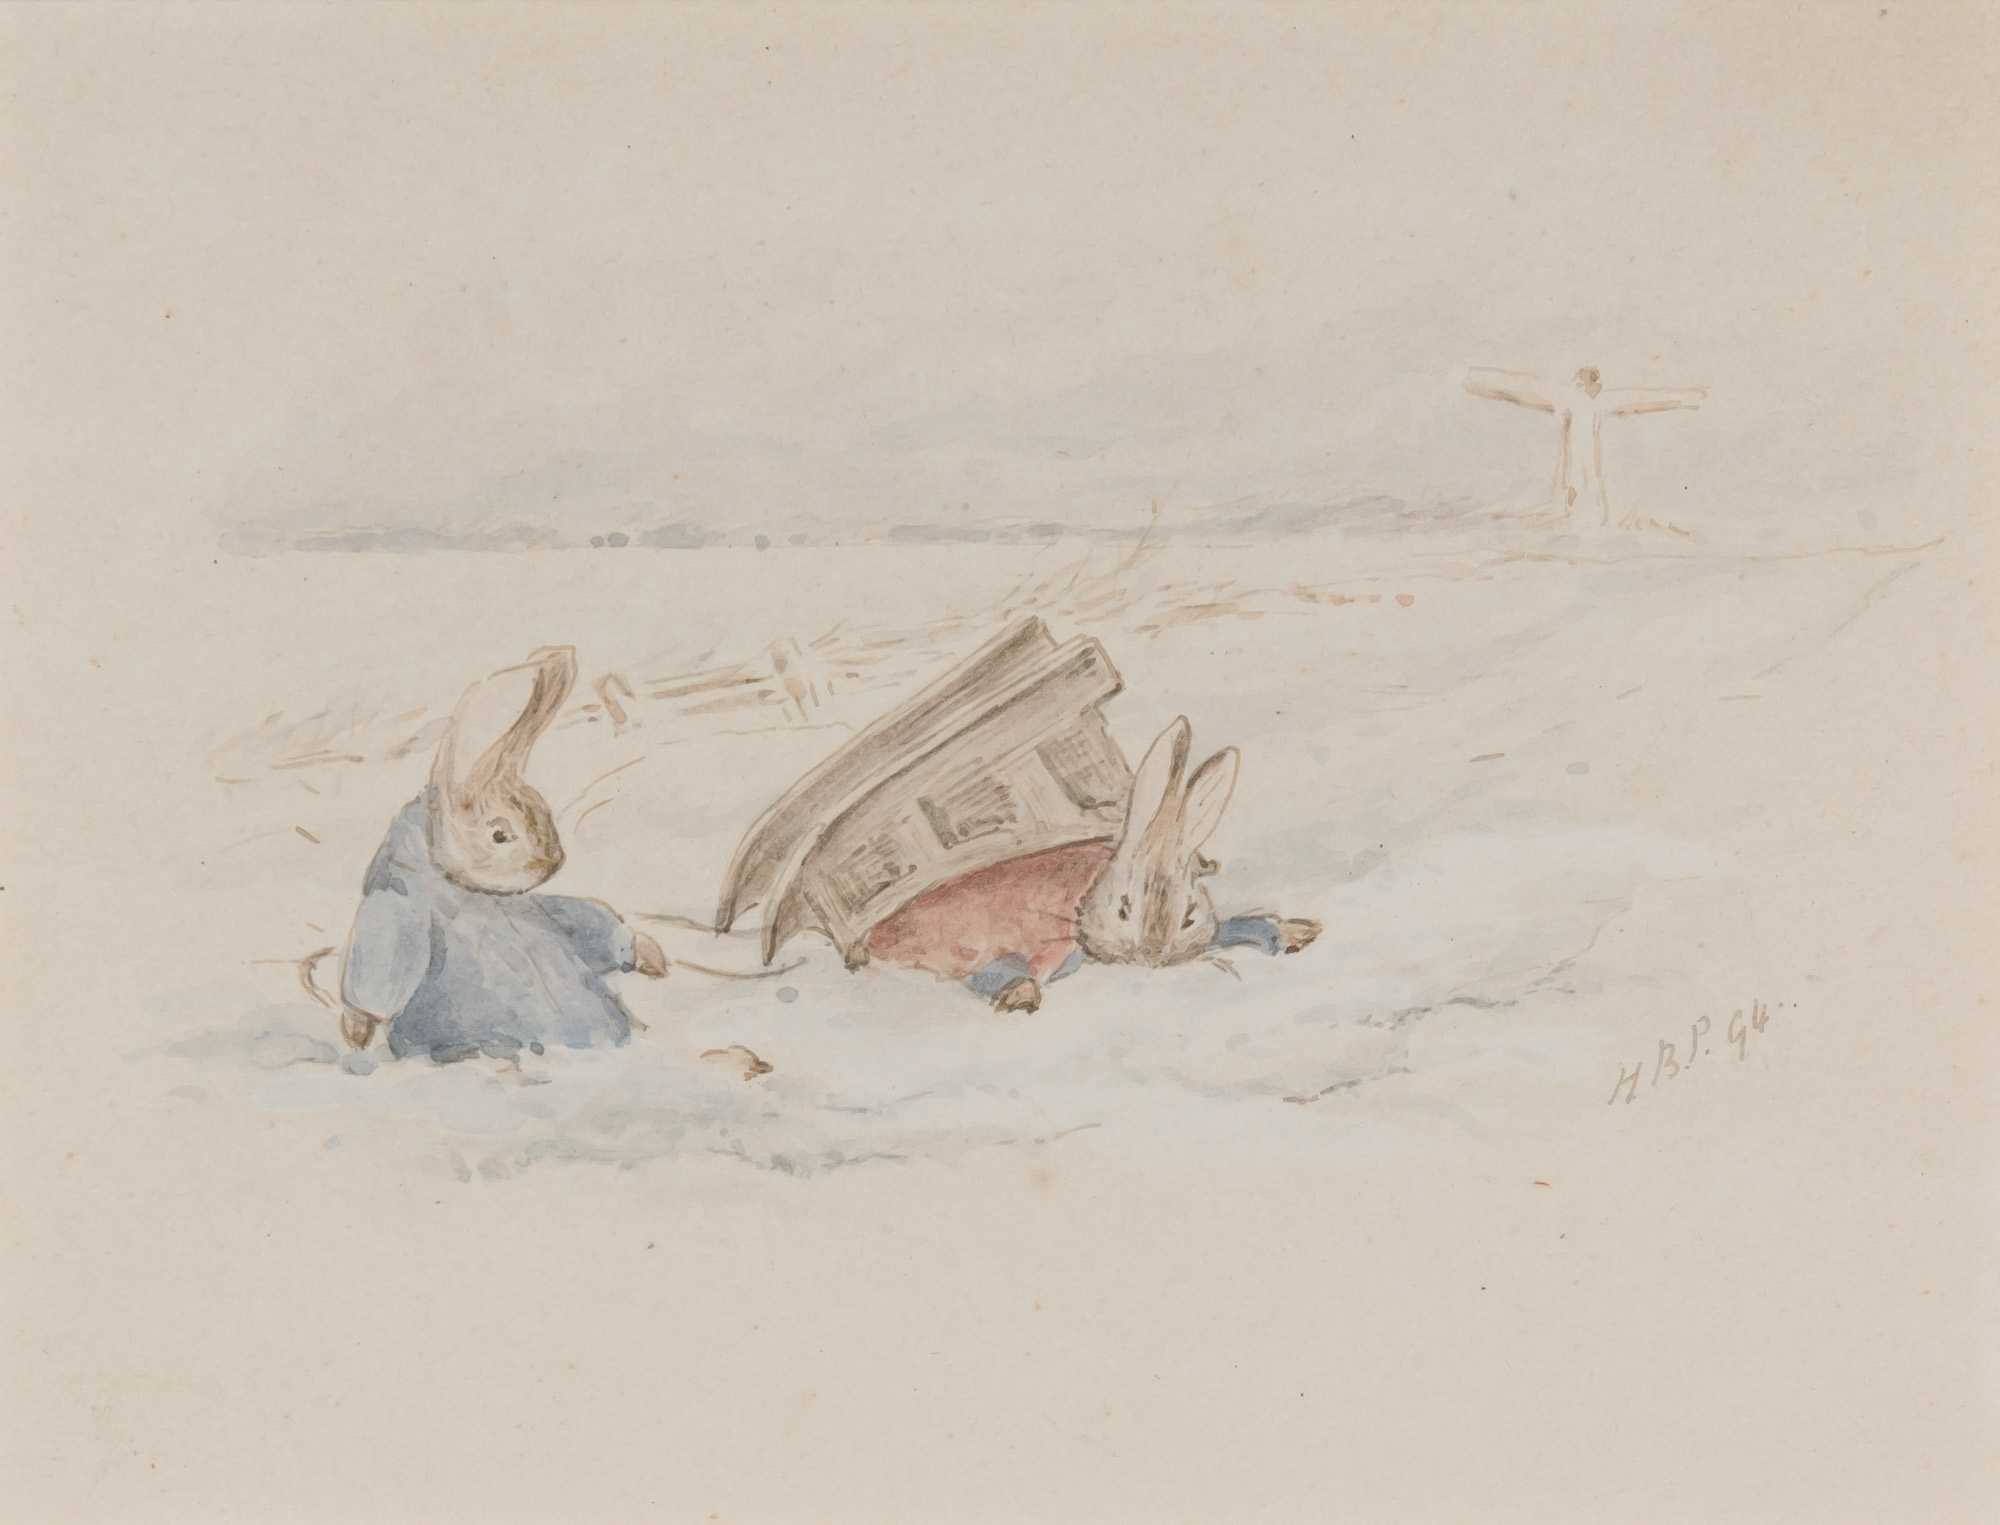 彼得兔玩雪橇 by Beatrix Potter - 1907 年 - 9 x 11 釐米 